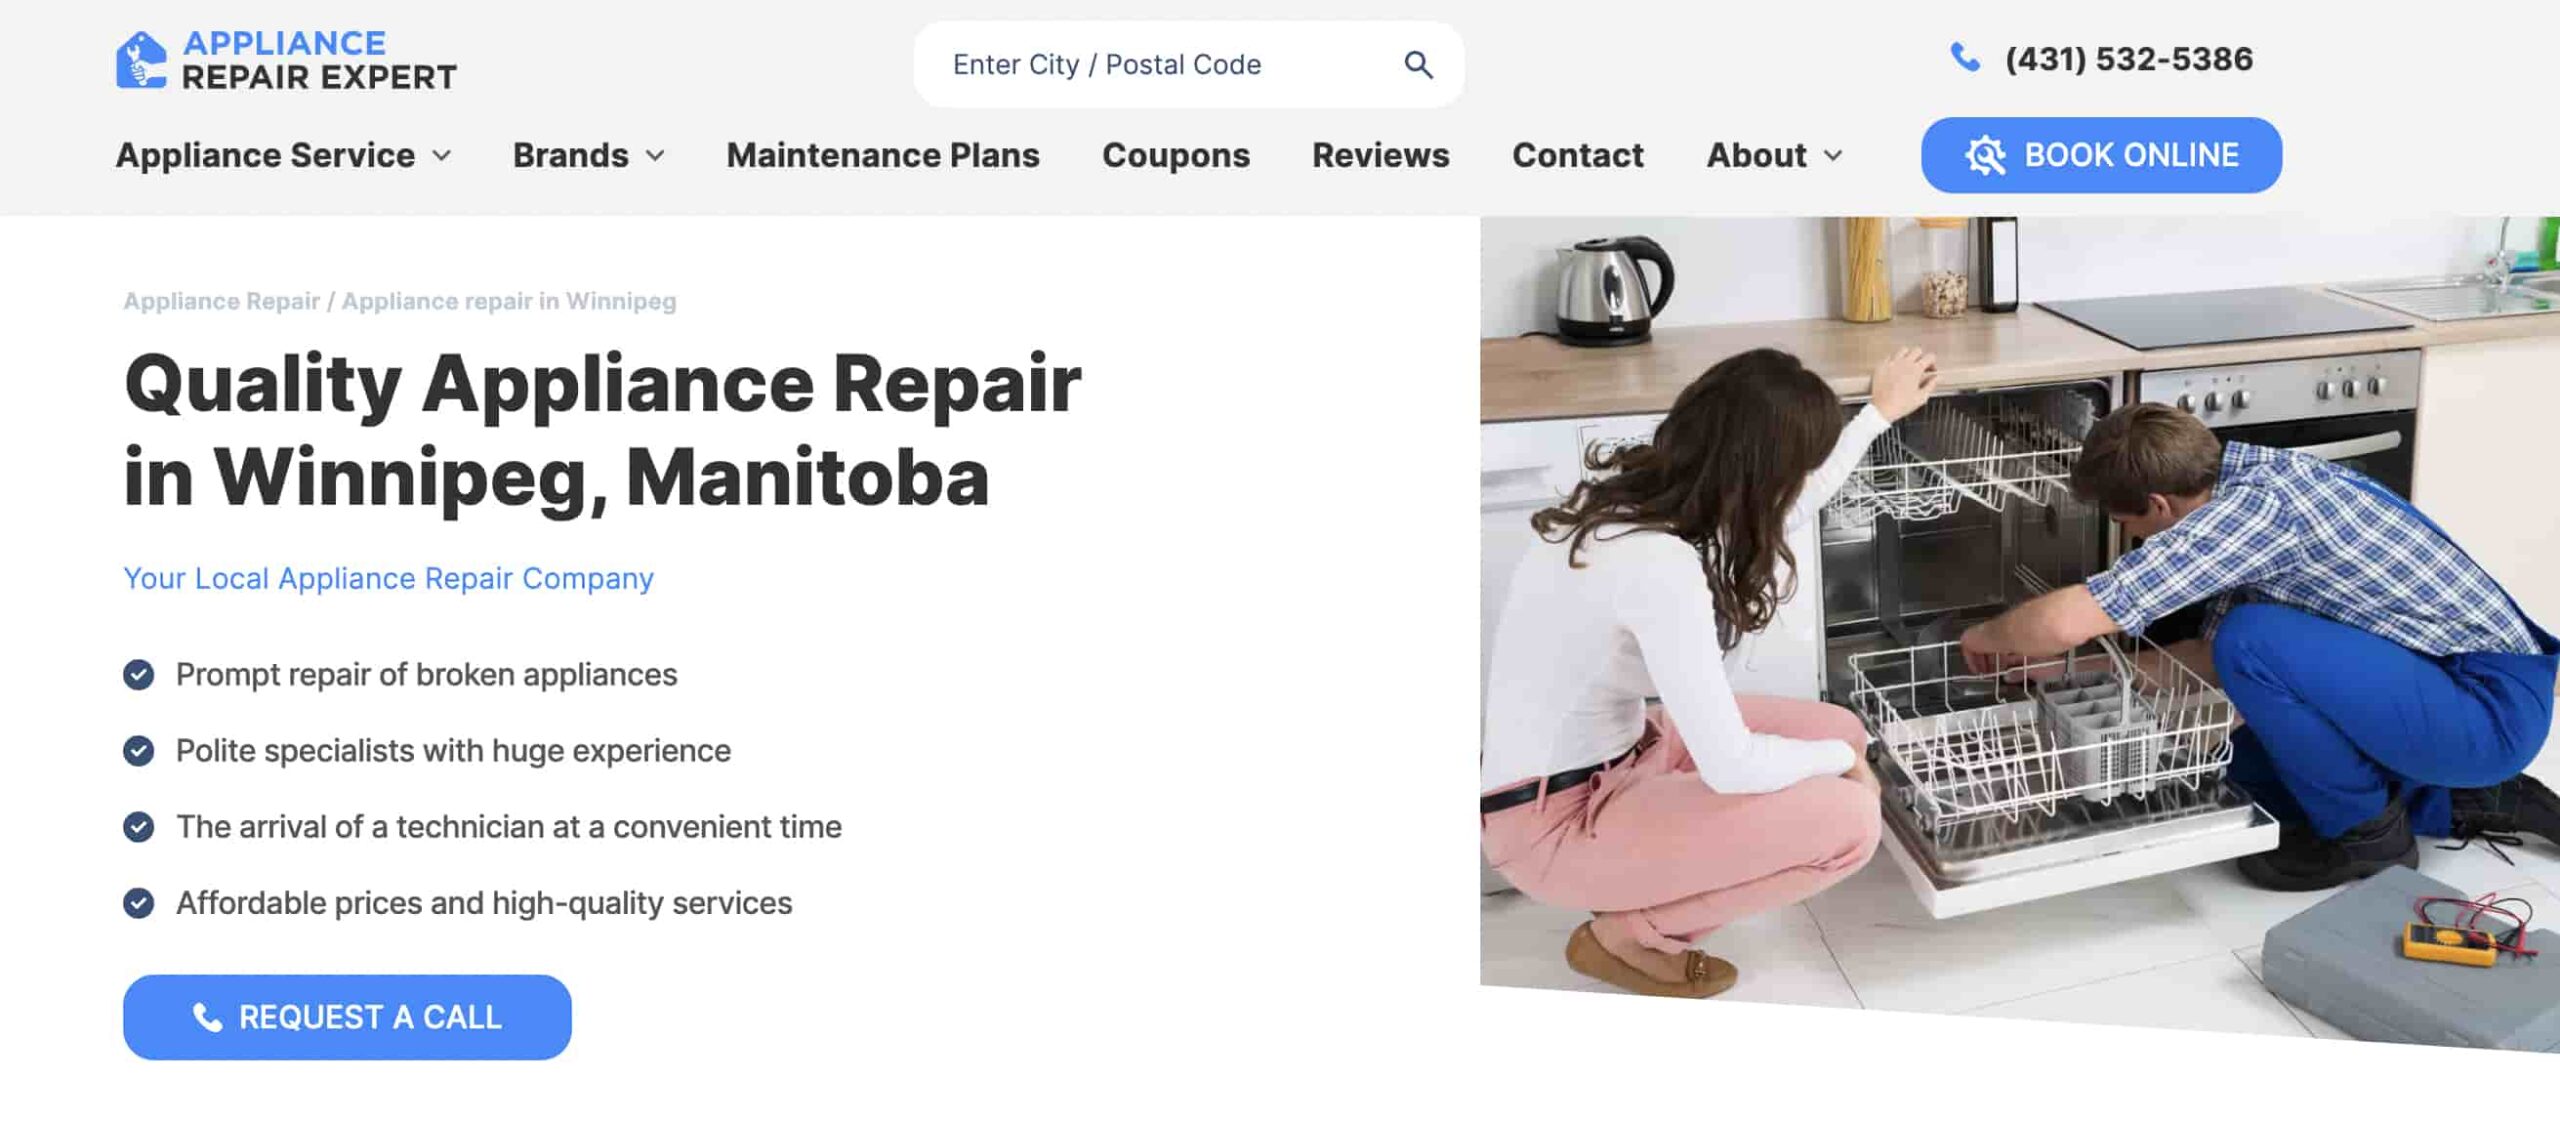 Appliance Repair Expert